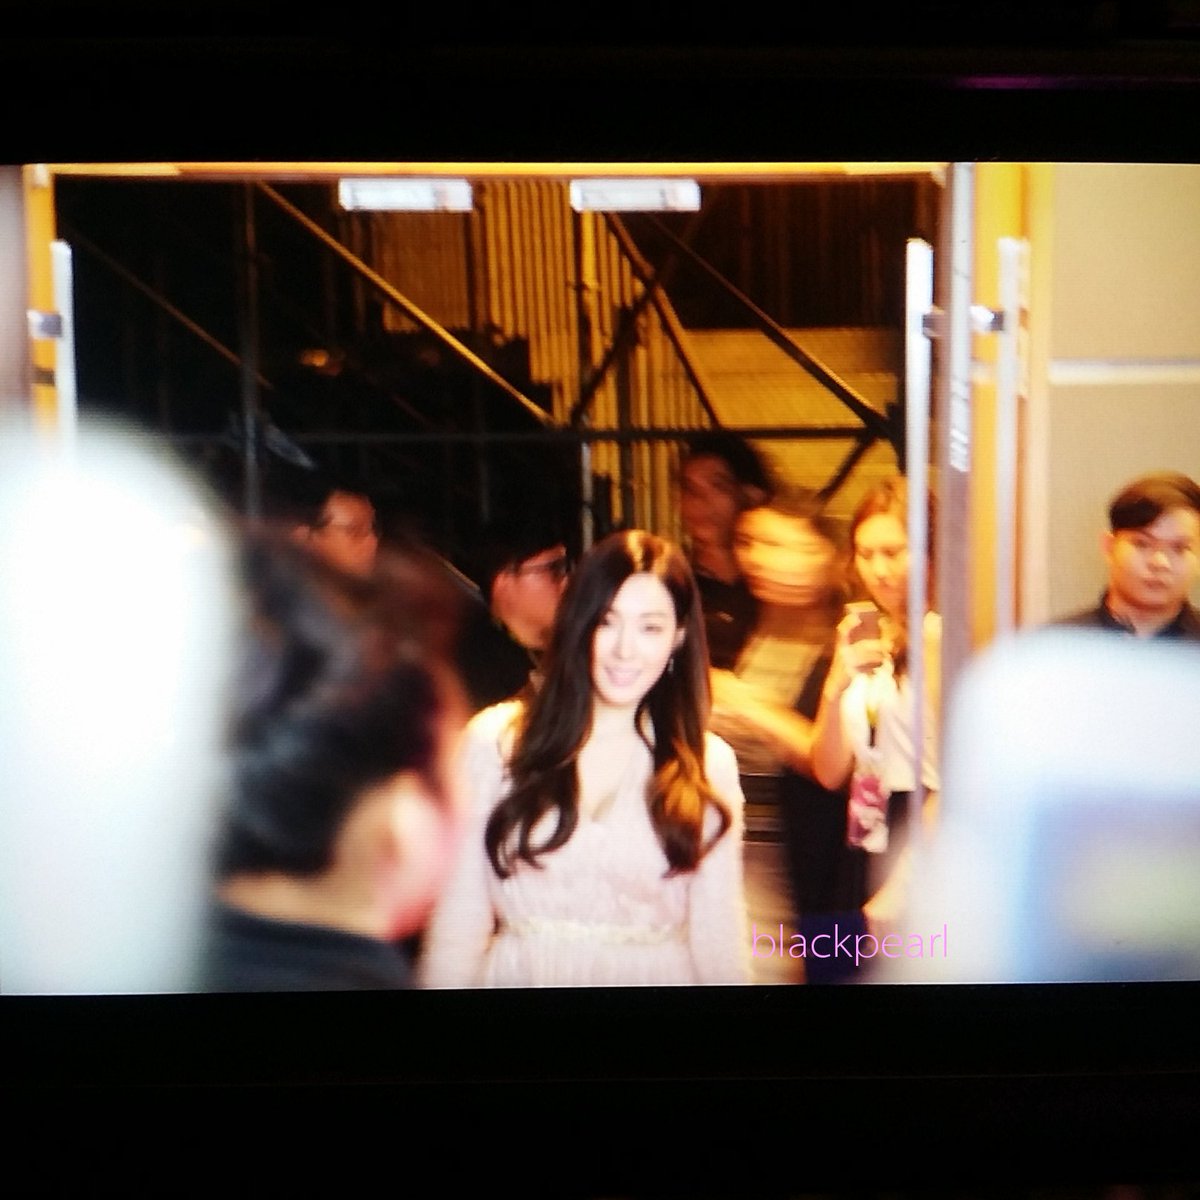 [PIC][06-12-2015]TaeTiSeo xuất phát đi Singappore để tham dự "Influence Asia 2015" vào tối nay CVmiADiUsAAzkt2